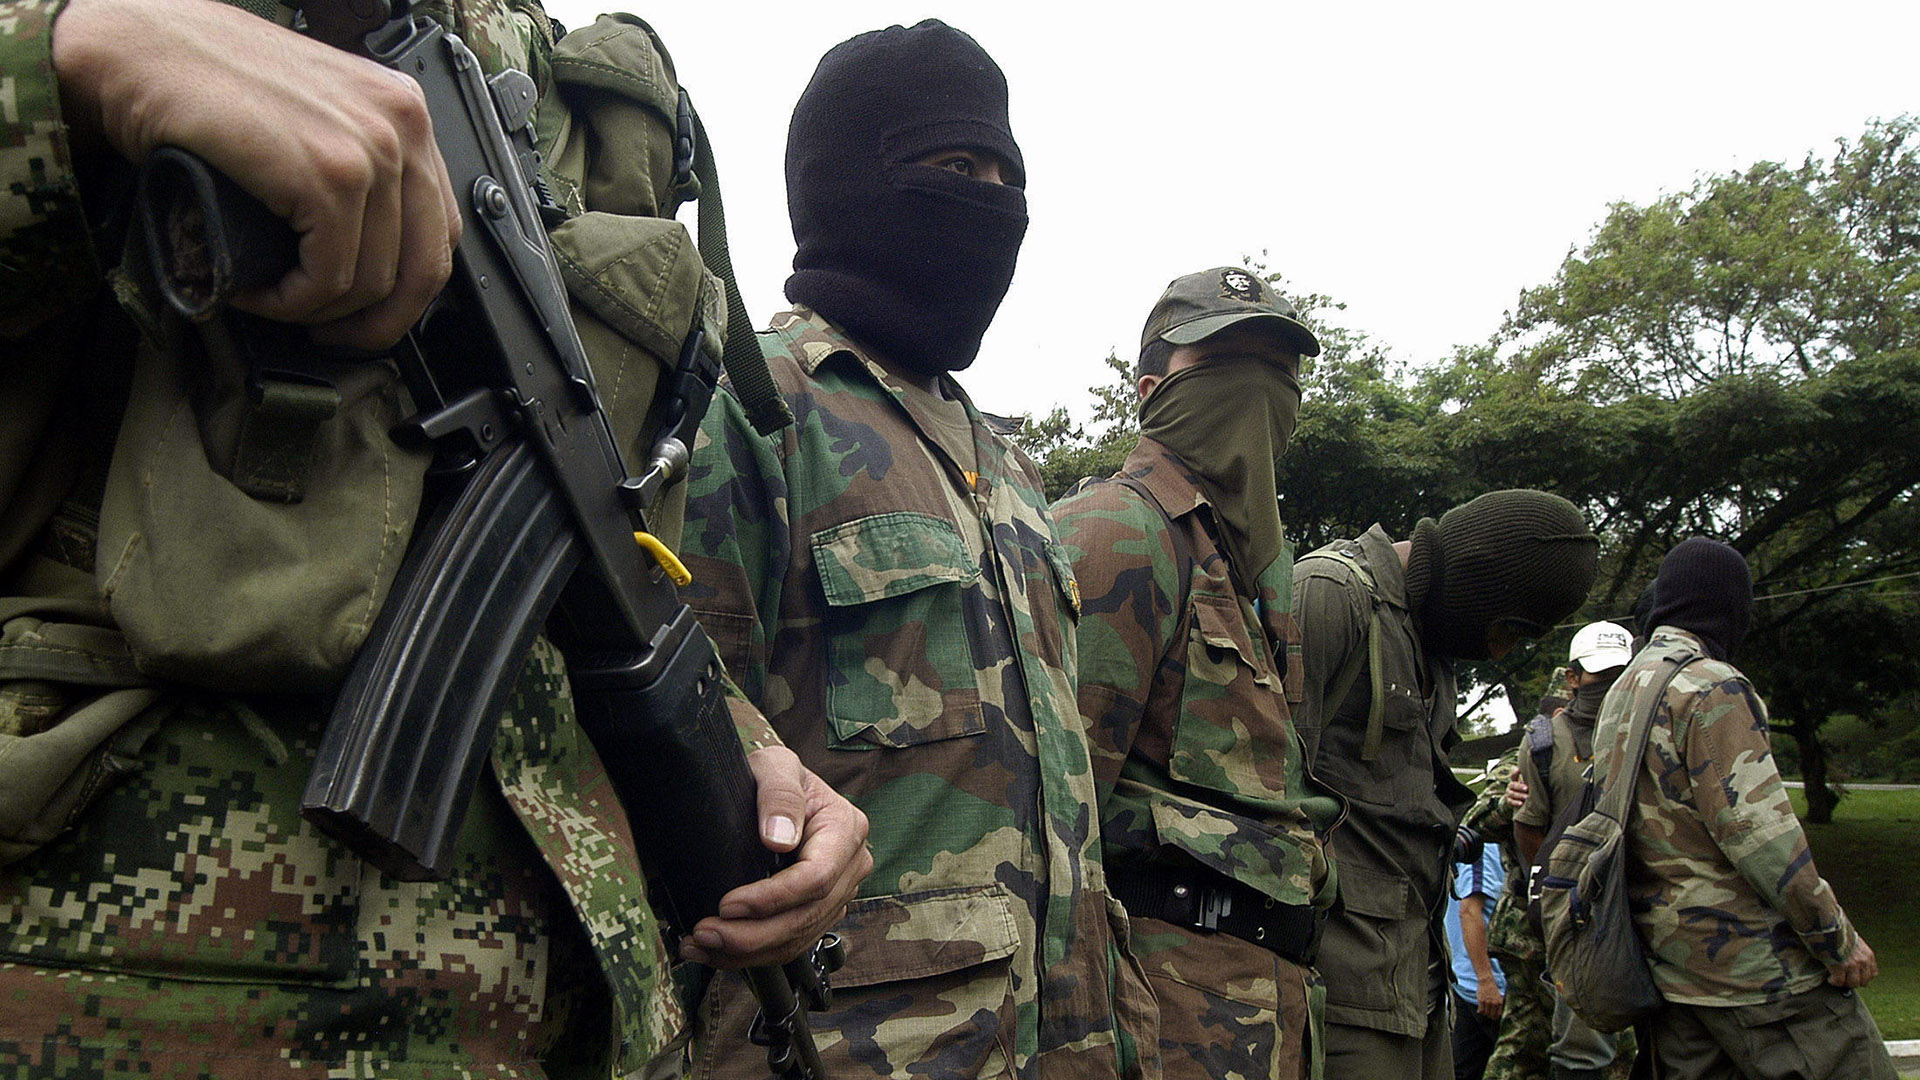 Grupo armado ultima a jefe de fuerte militar en Bolívar